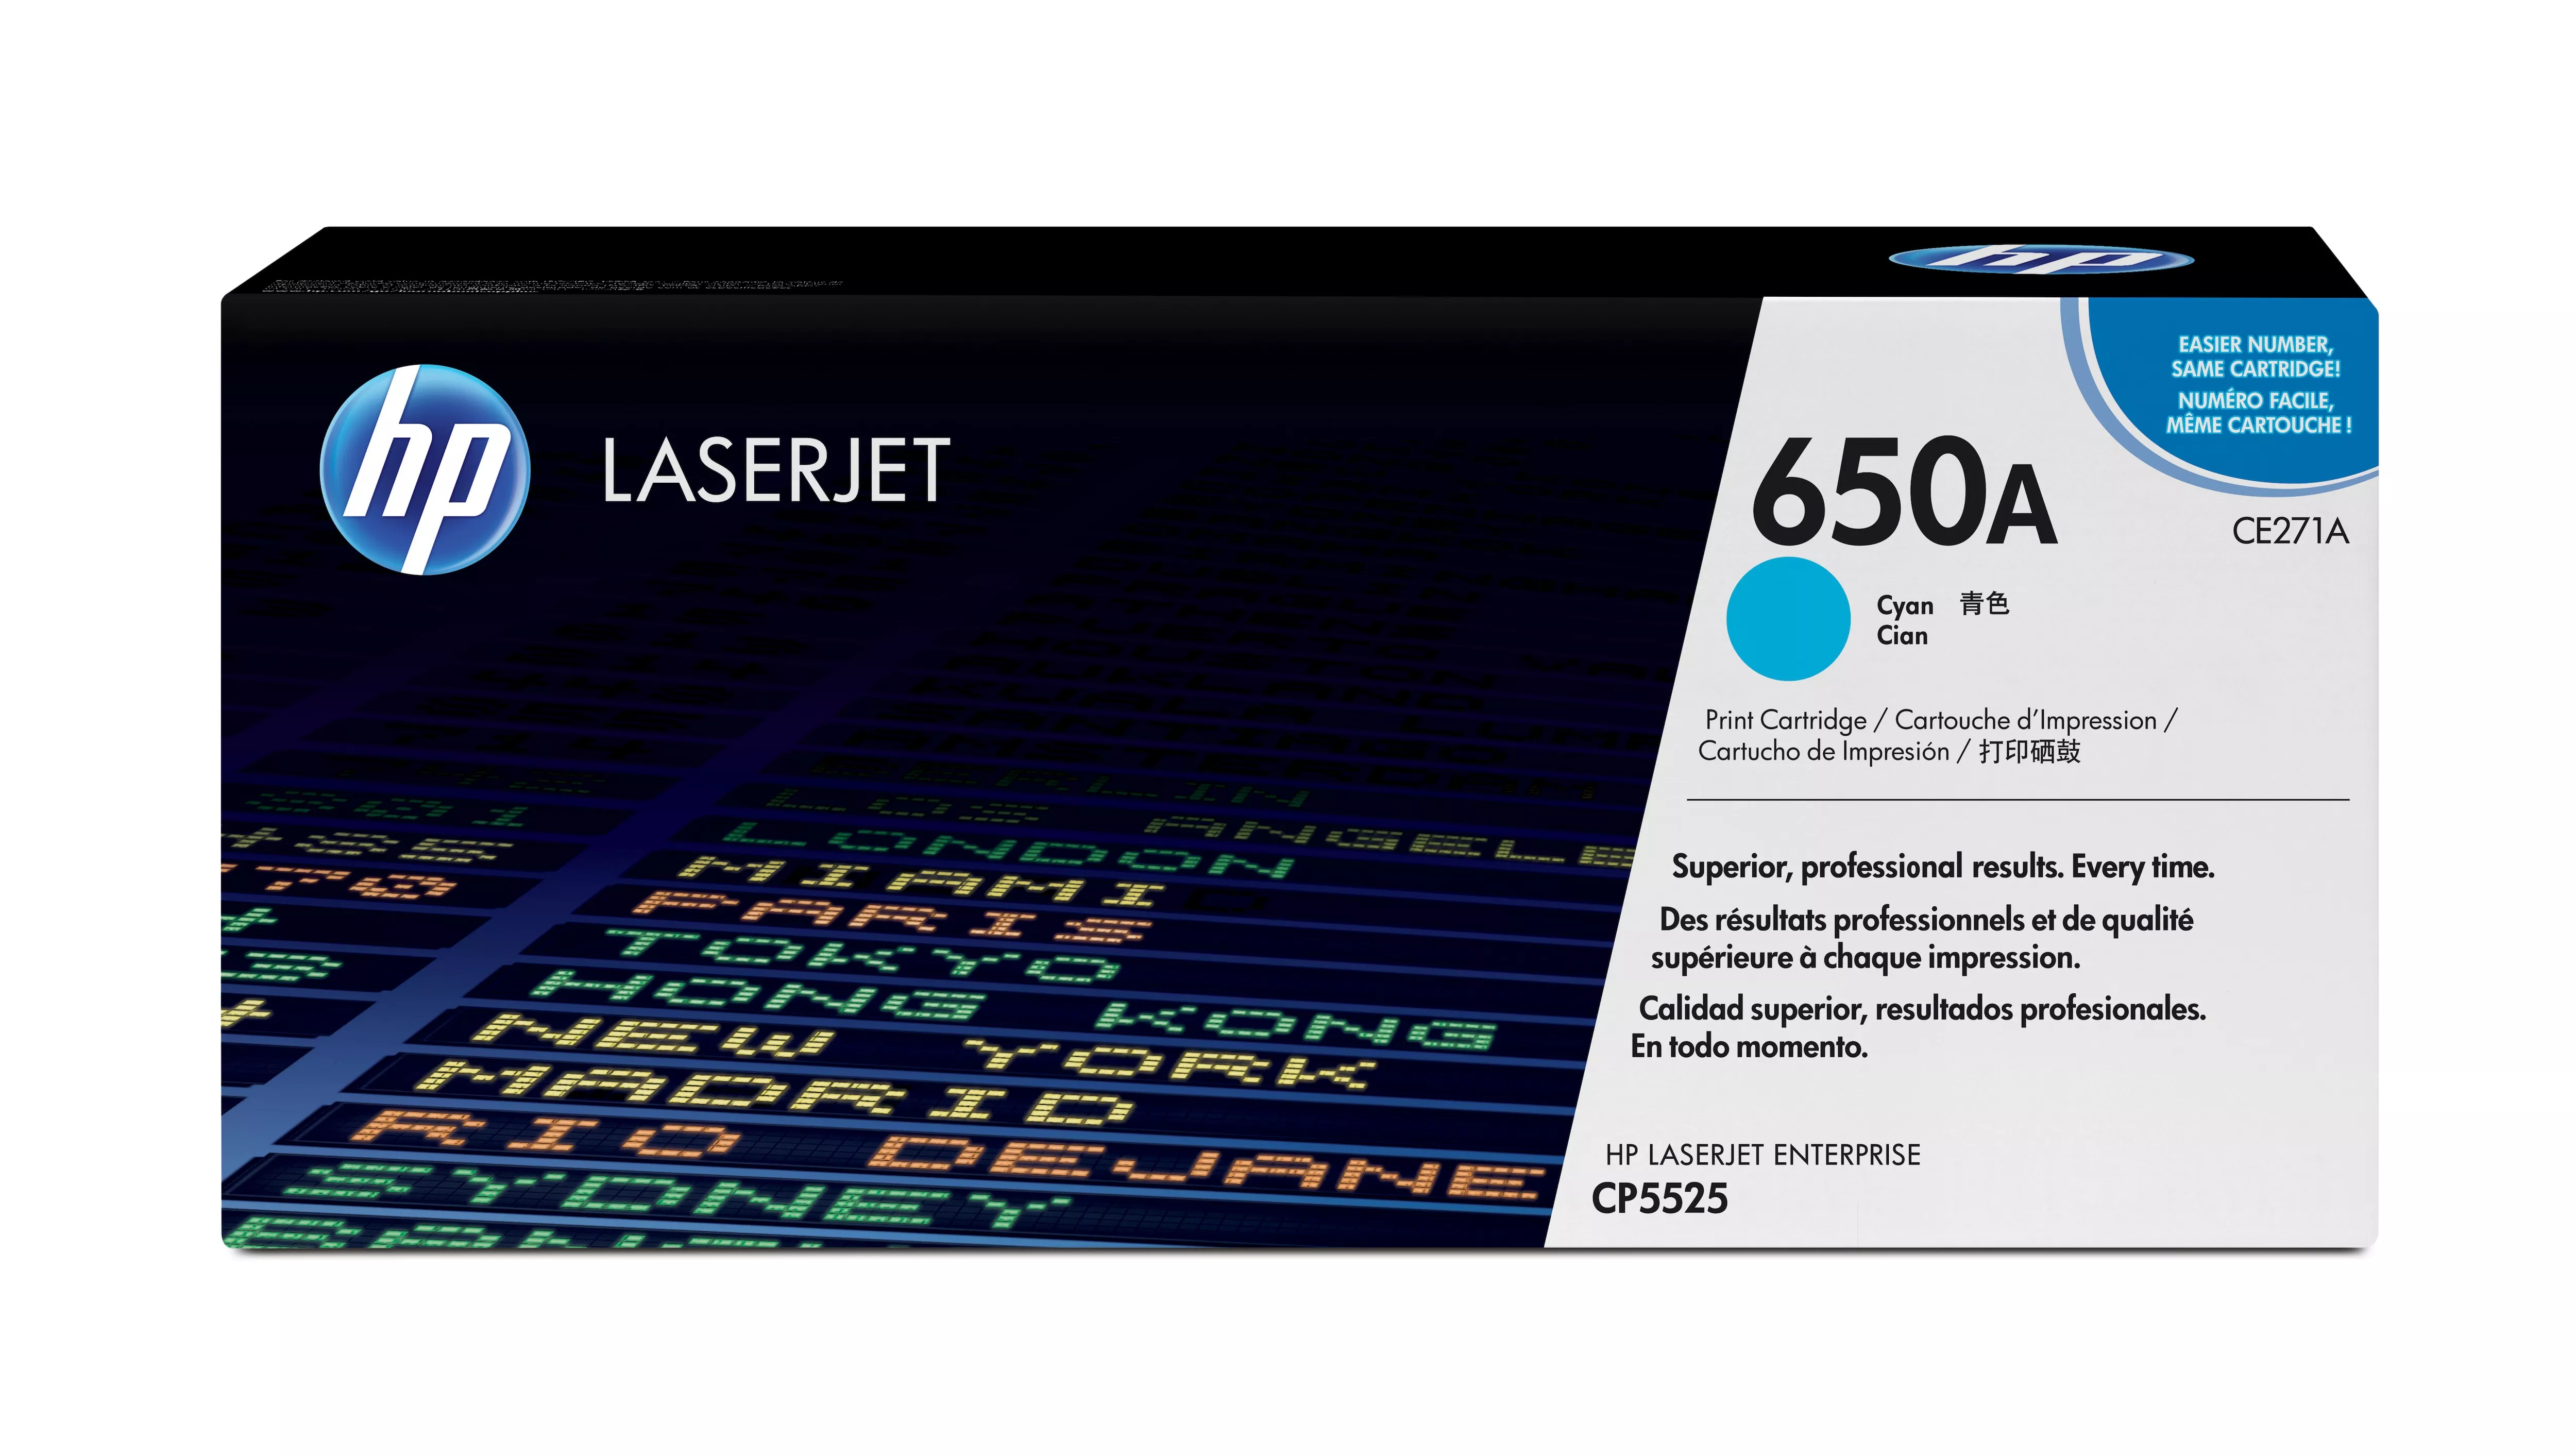 Achat HP original Colour LaserJet CE271A Toner cartridge cyan au meilleur prix